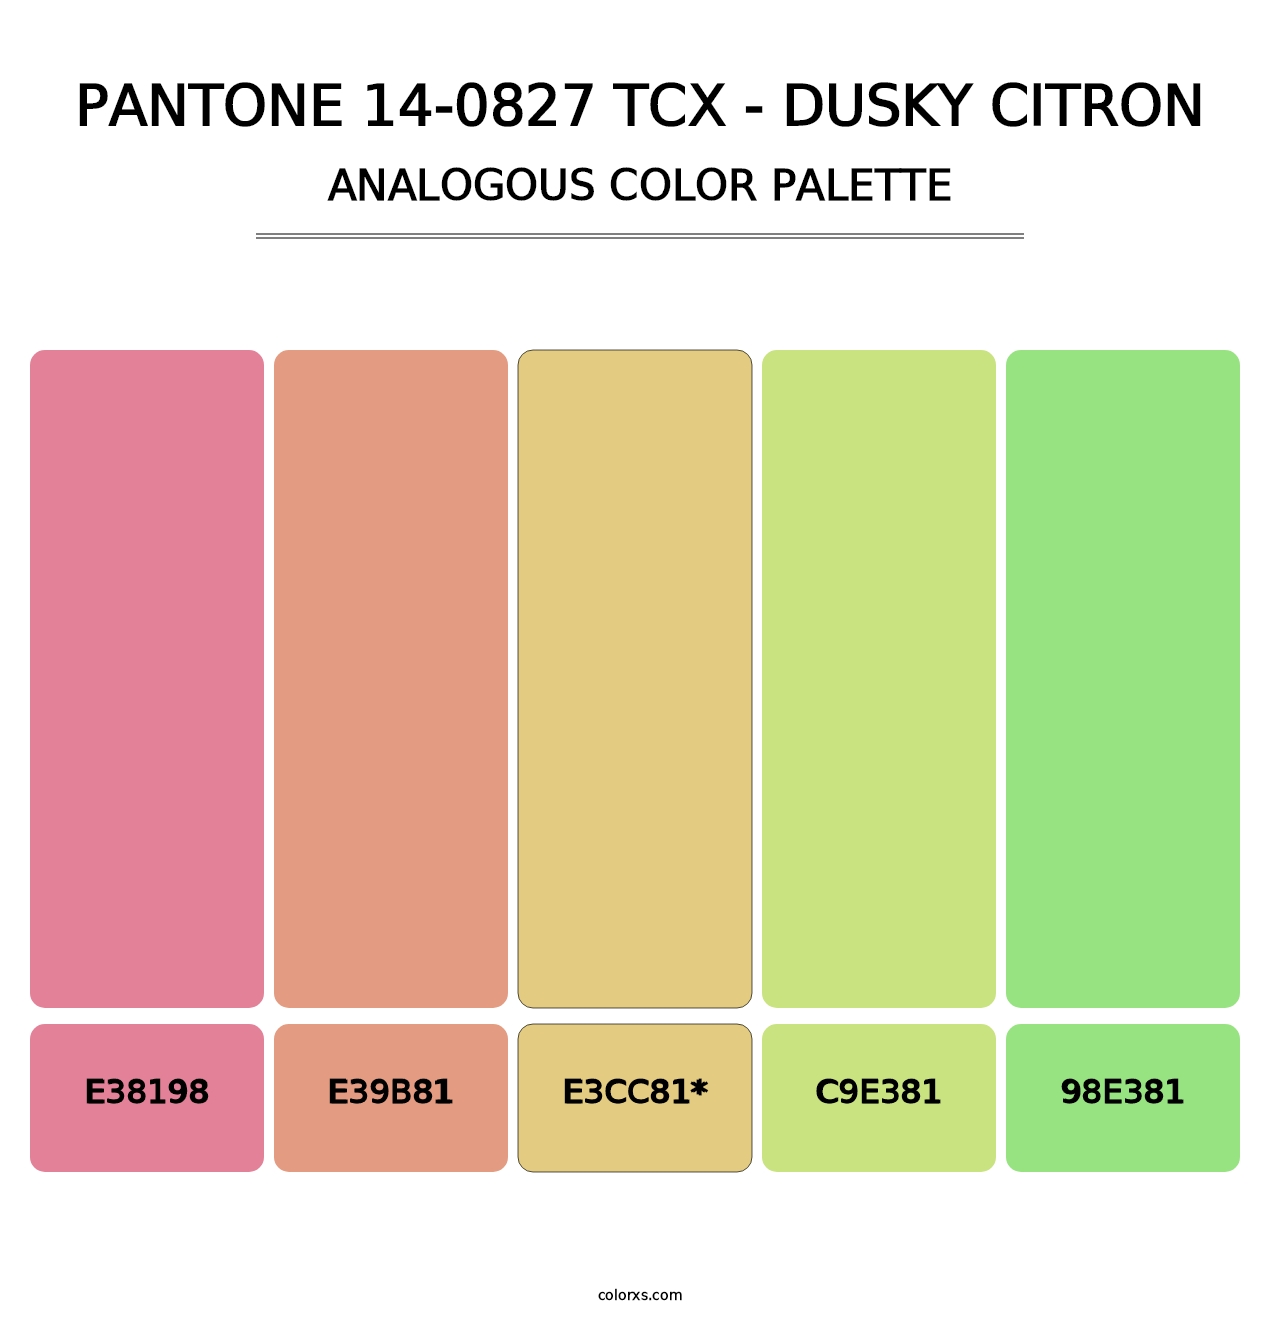 PANTONE 14-0827 TCX - Dusky Citron - Analogous Color Palette